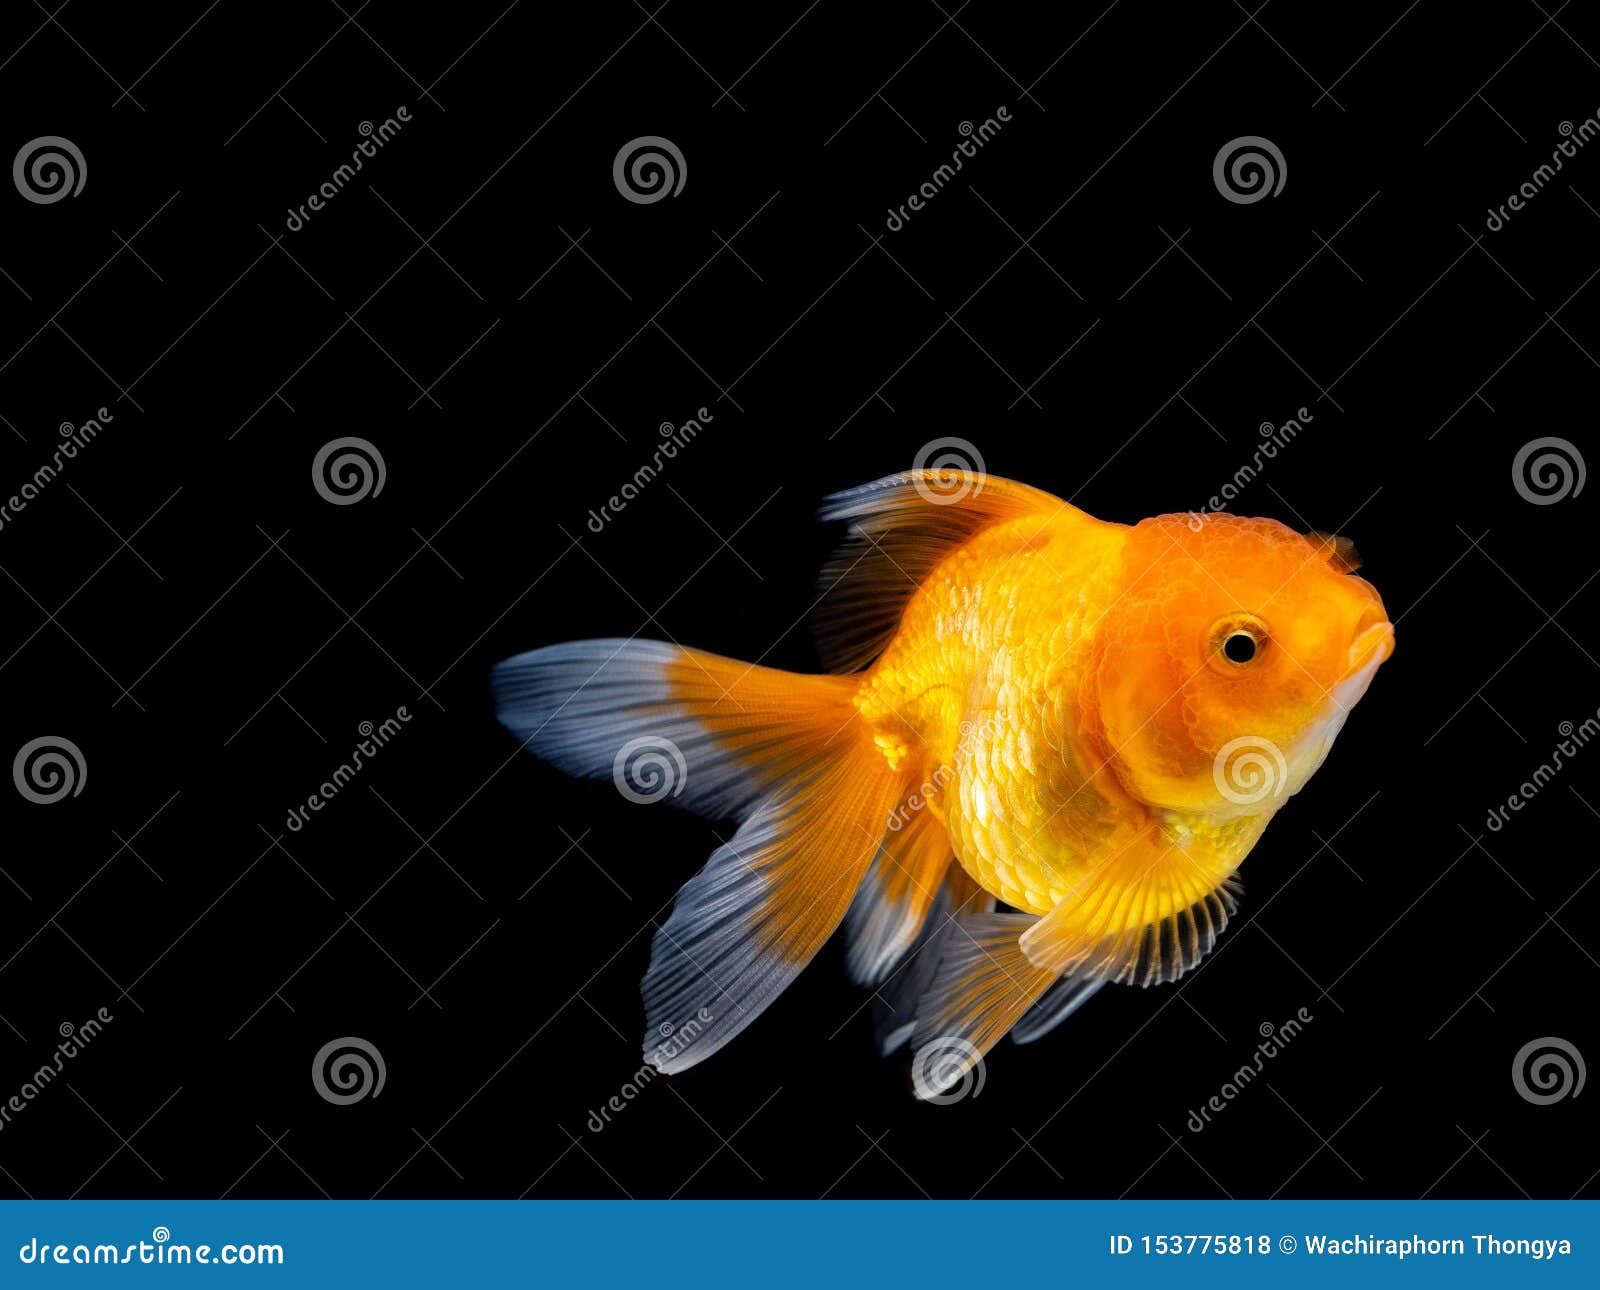 Goldfish on Black Background,Goldfish Swimming on Black Background ,Gold  Fish,Decorative Aquarium Fish,Gold Fish Stock Photo - Image of animals,  freedom: 153775818